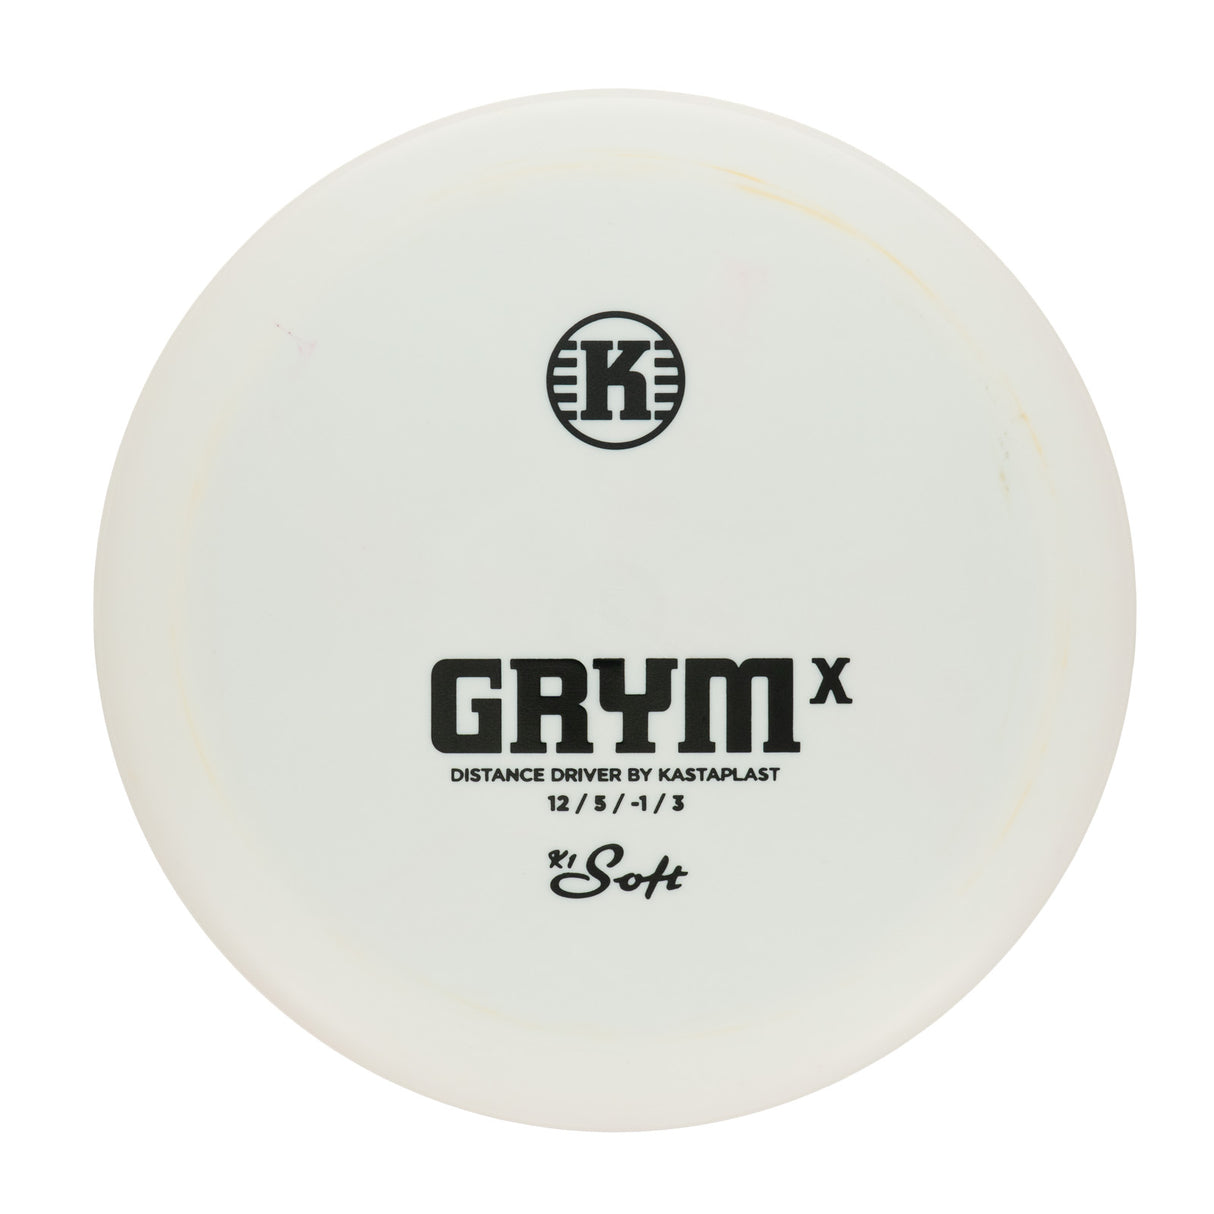 Kastaplast Grym X - K1 Soft 175g | Style 0002